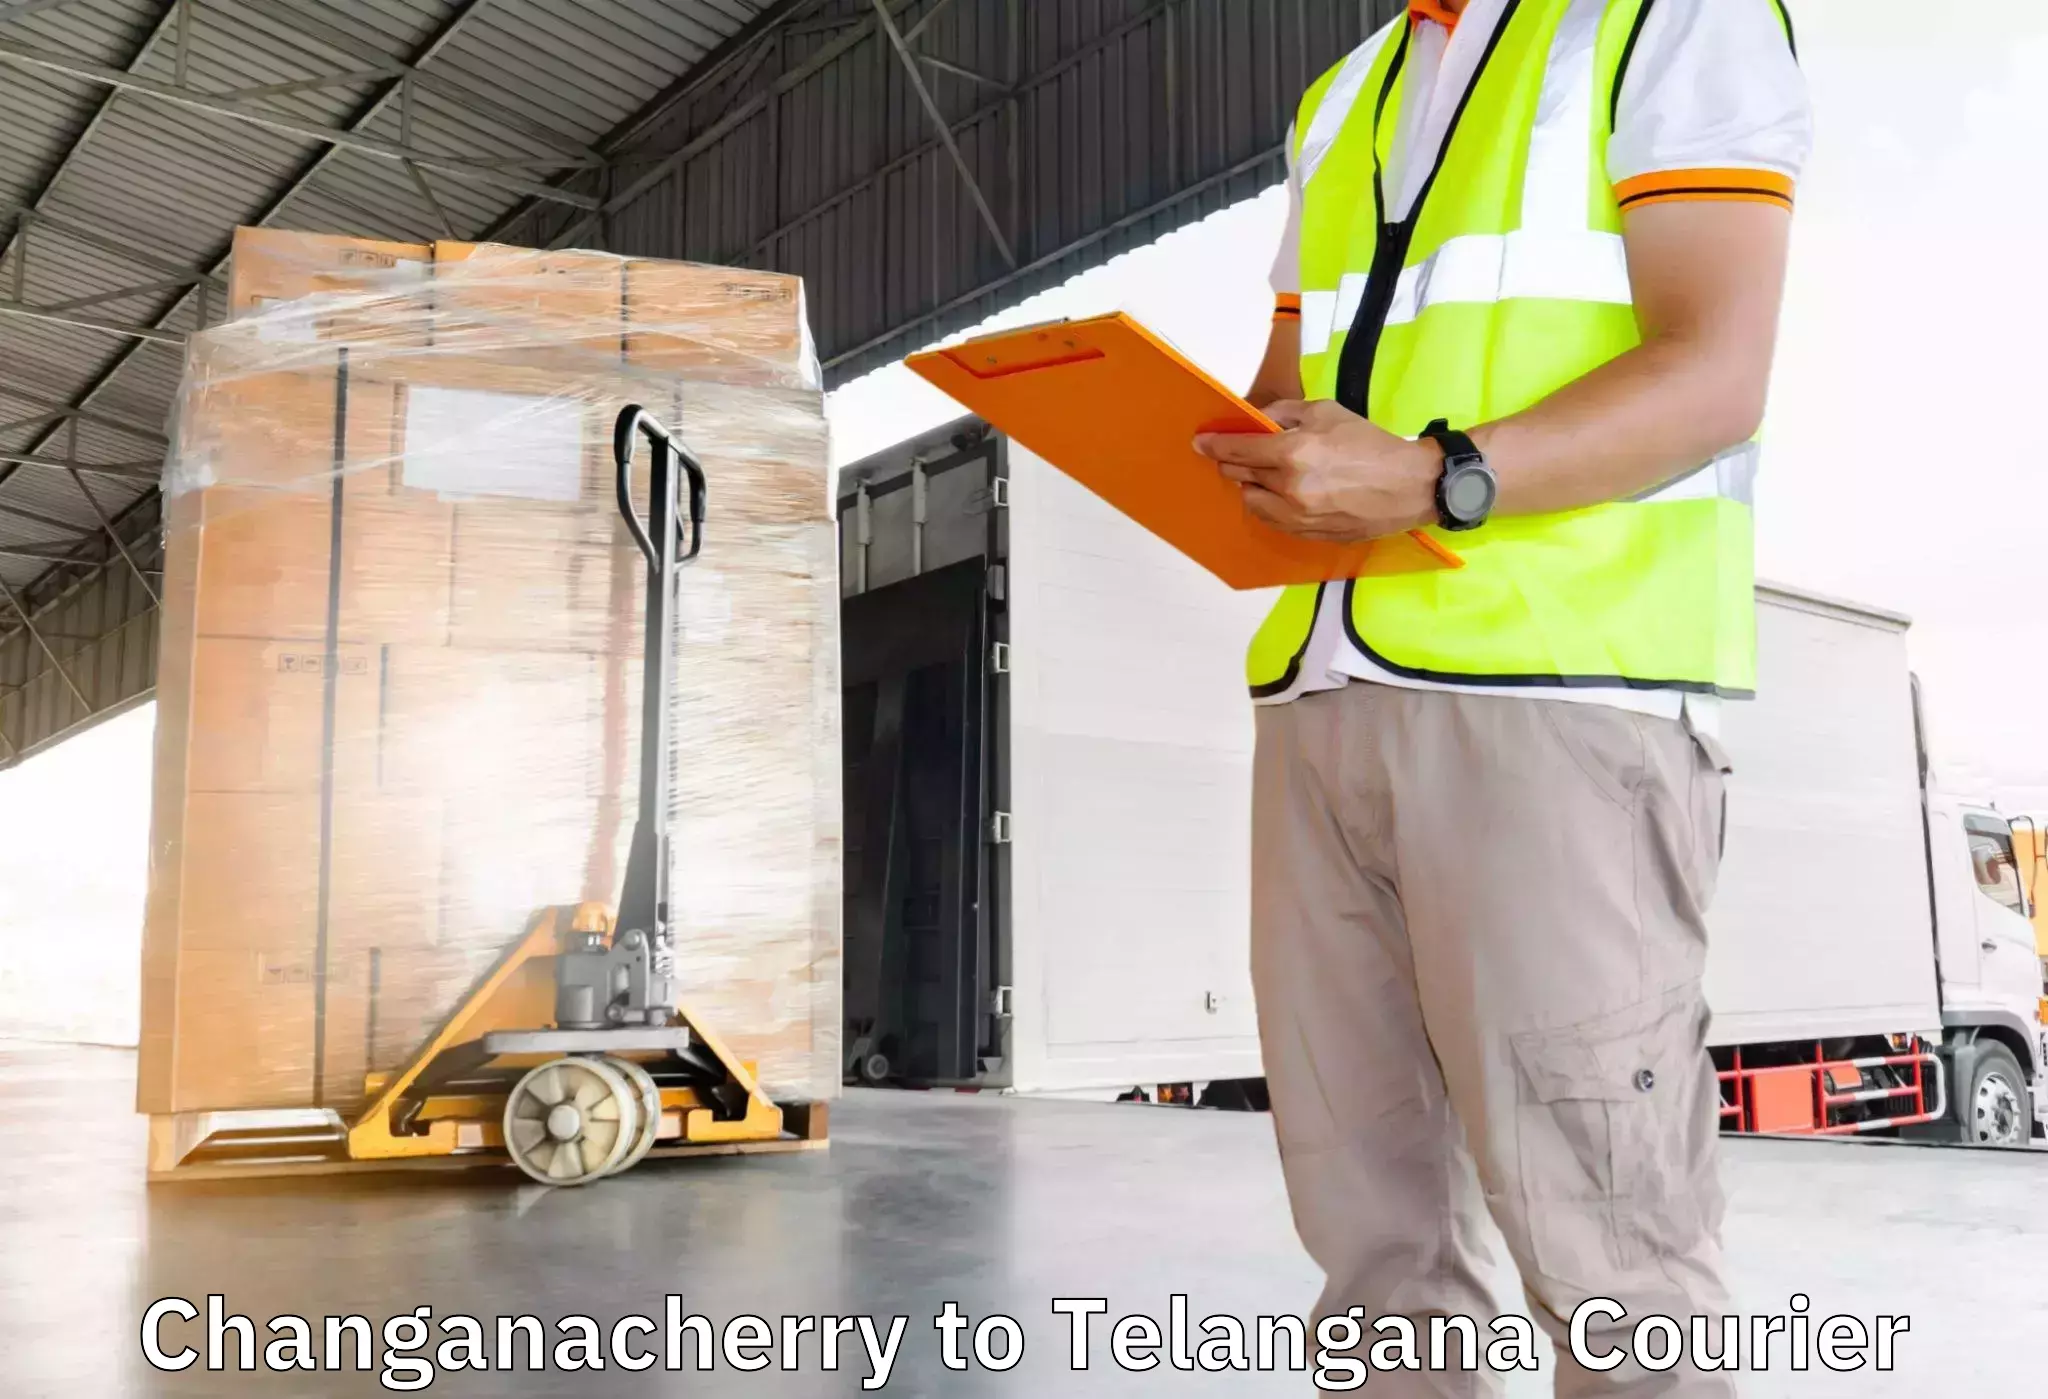 Furniture transport company Changanacherry to Sathupally